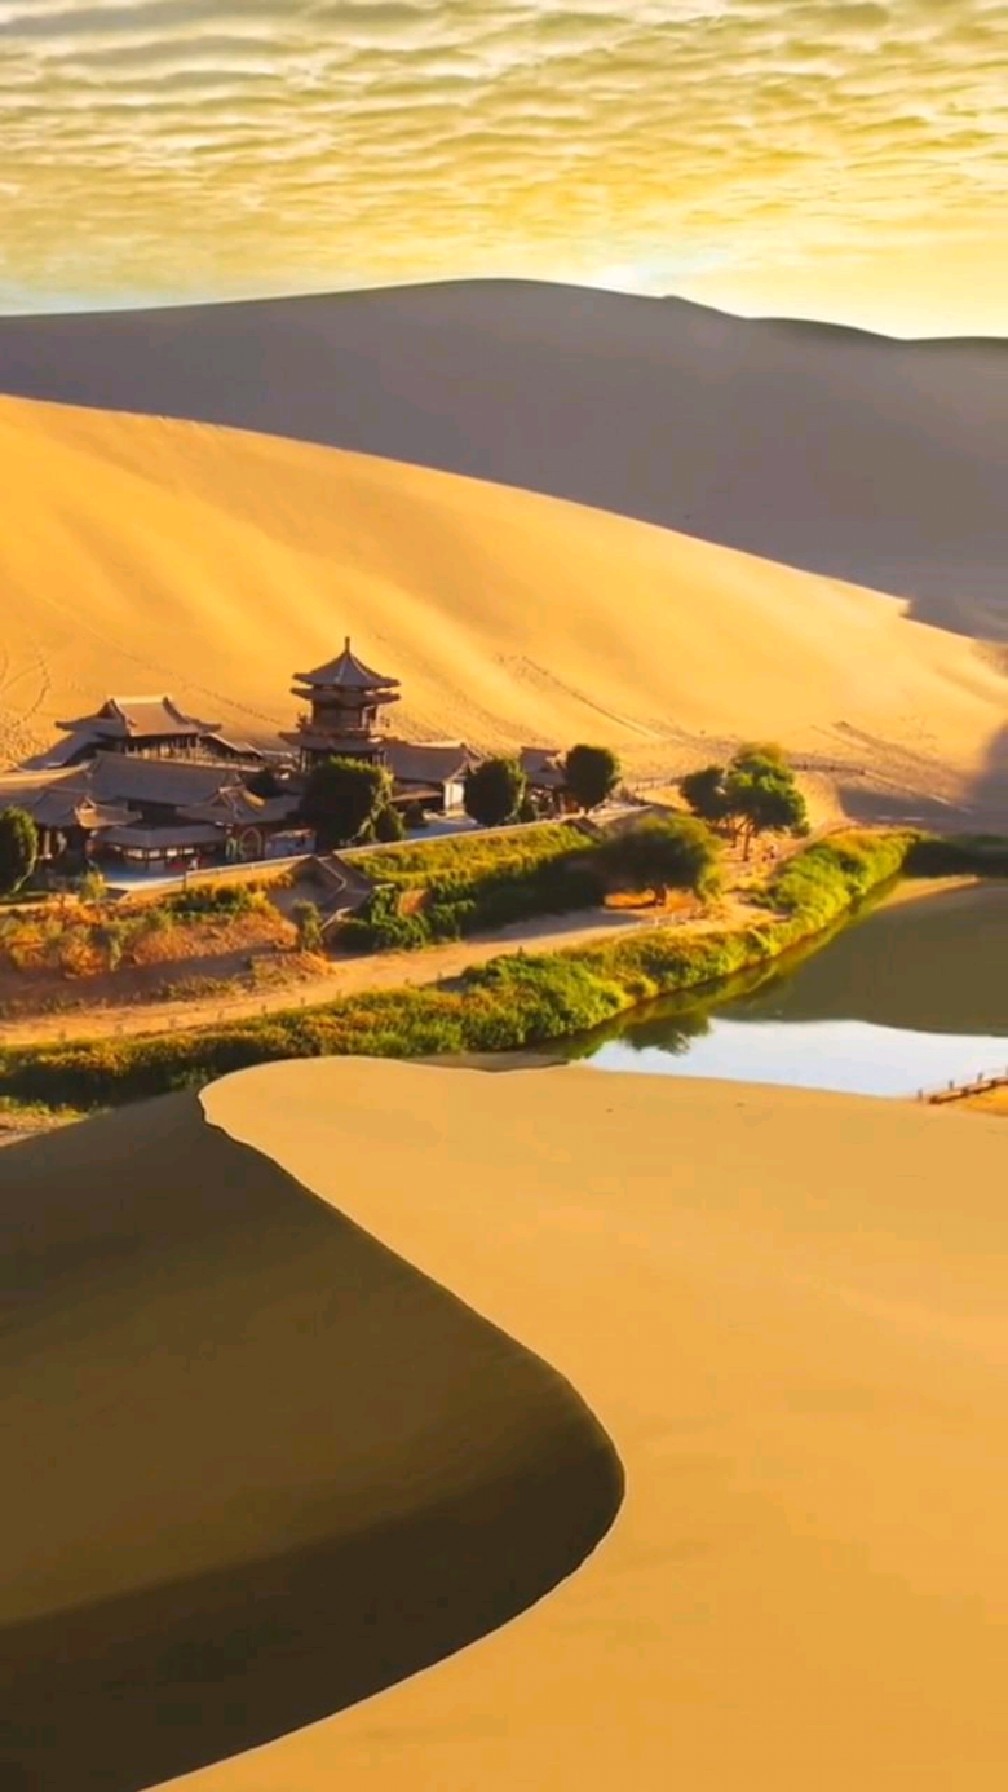 中国最美沙漠之一 鸣沙山月牙泉